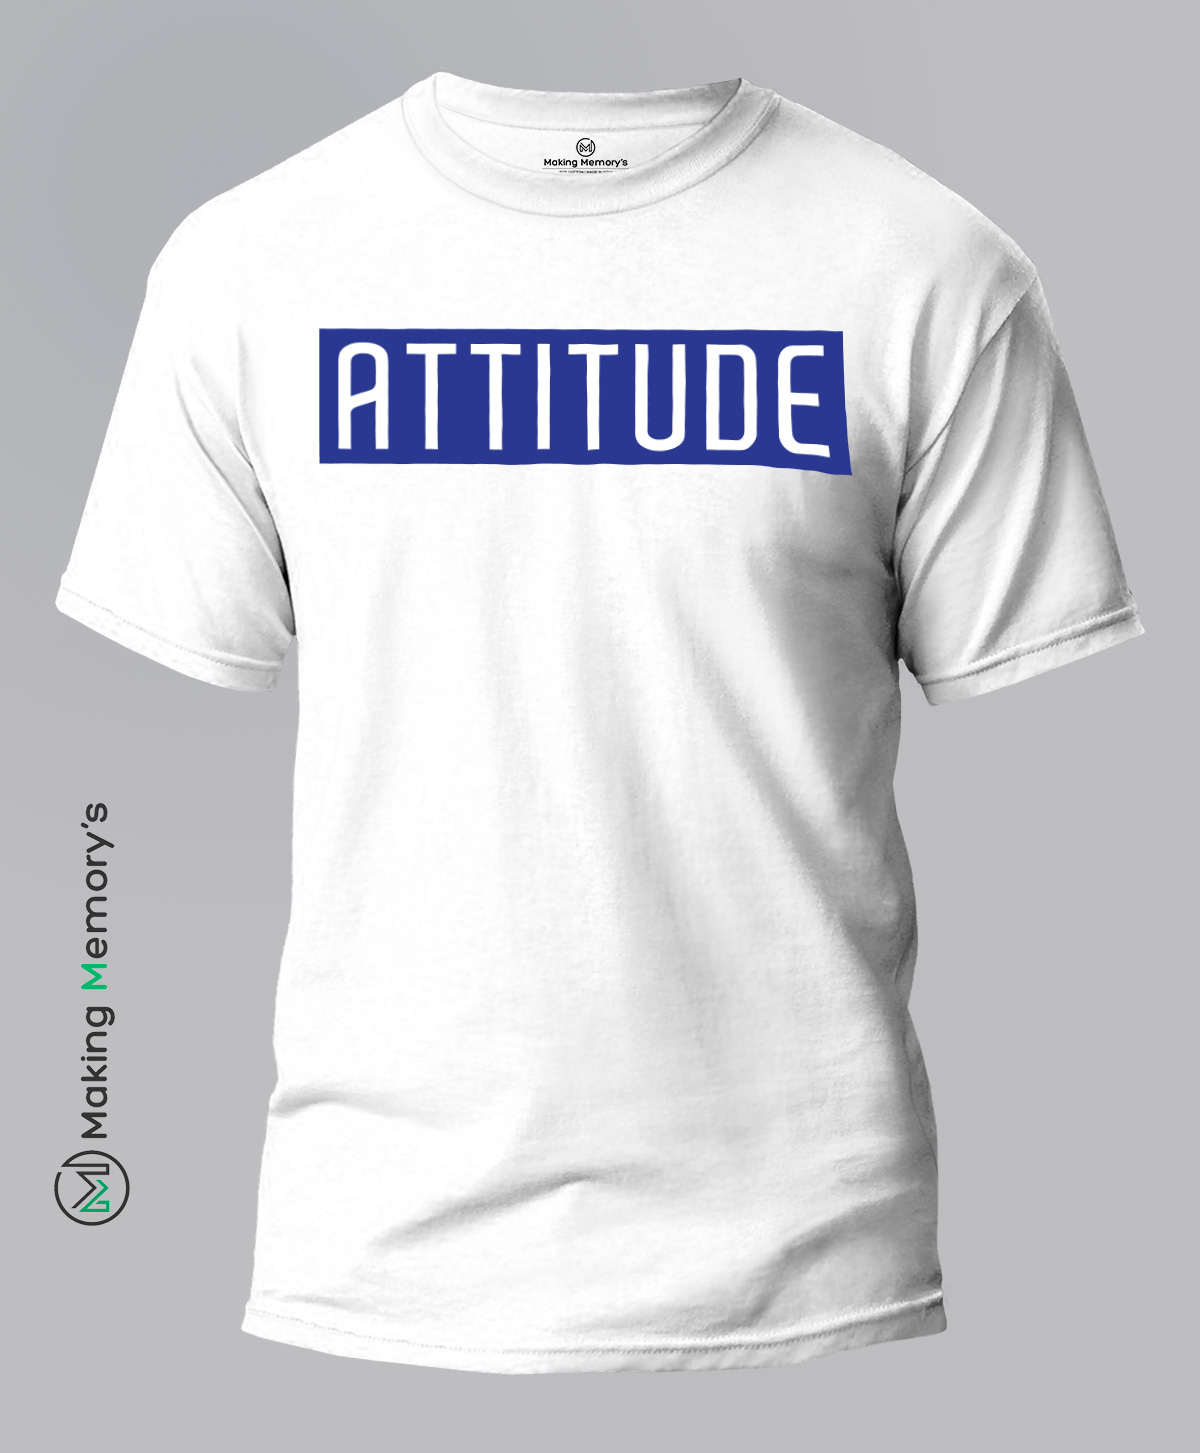 The-Attitude-White-T-Shirt